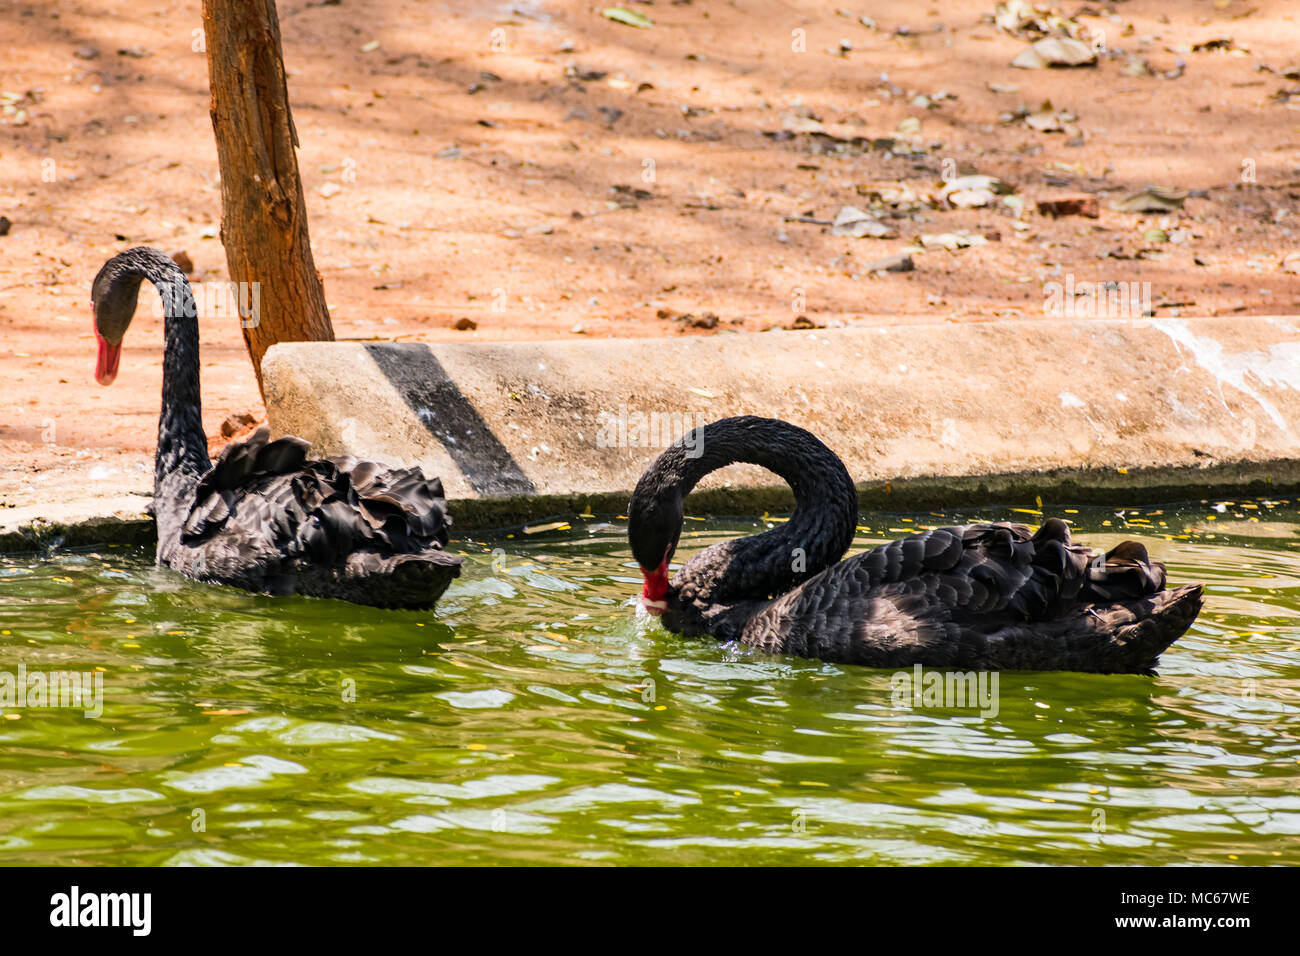 Ein schwarzes Paar swan Spielen am Wasser im Zoo. Stockfoto